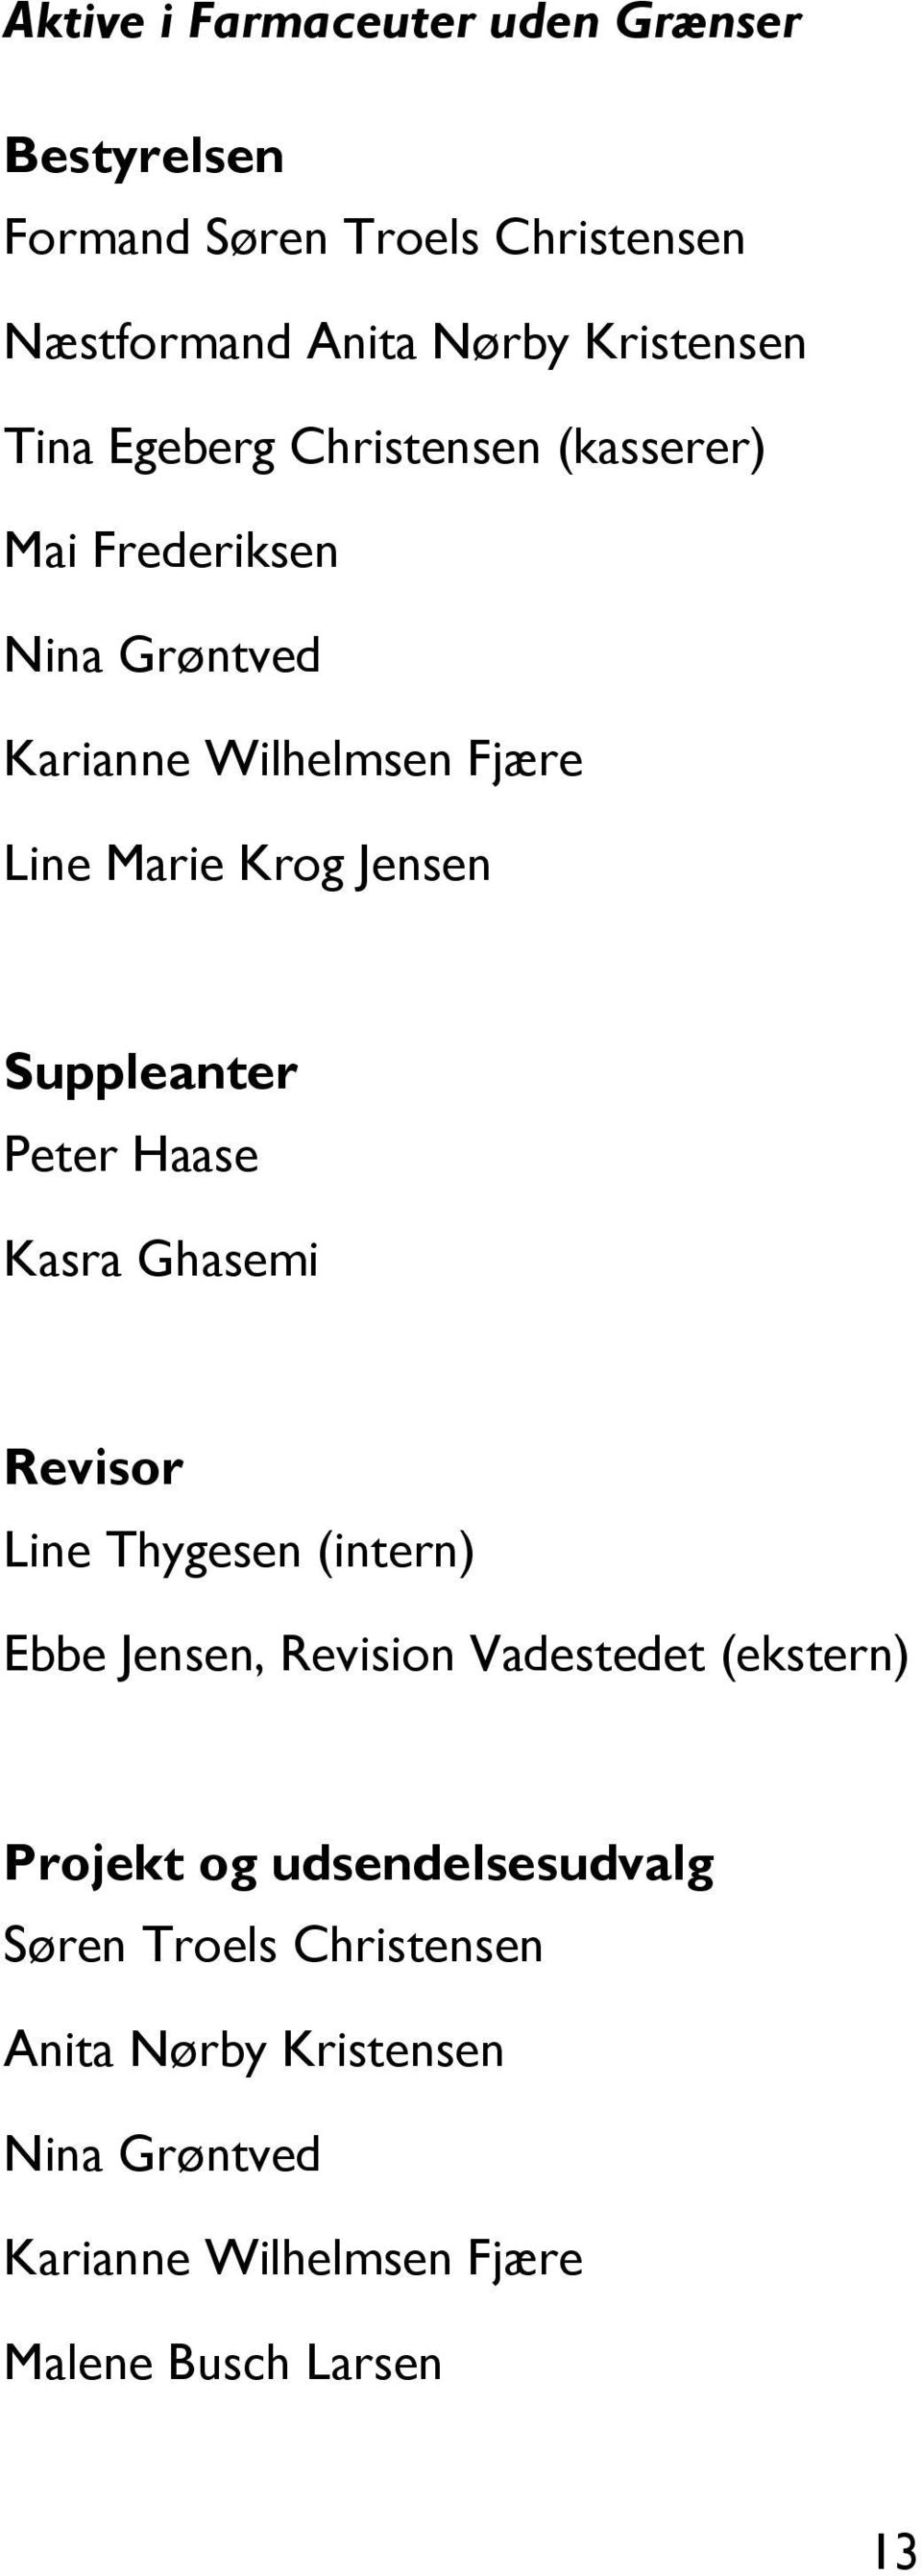 Suppleanter Peter Haase Kasra Ghasemi Revisor Line Thygesen (intern) Ebbe Jensen, Revision Vadestedet (ekstern) Projekt